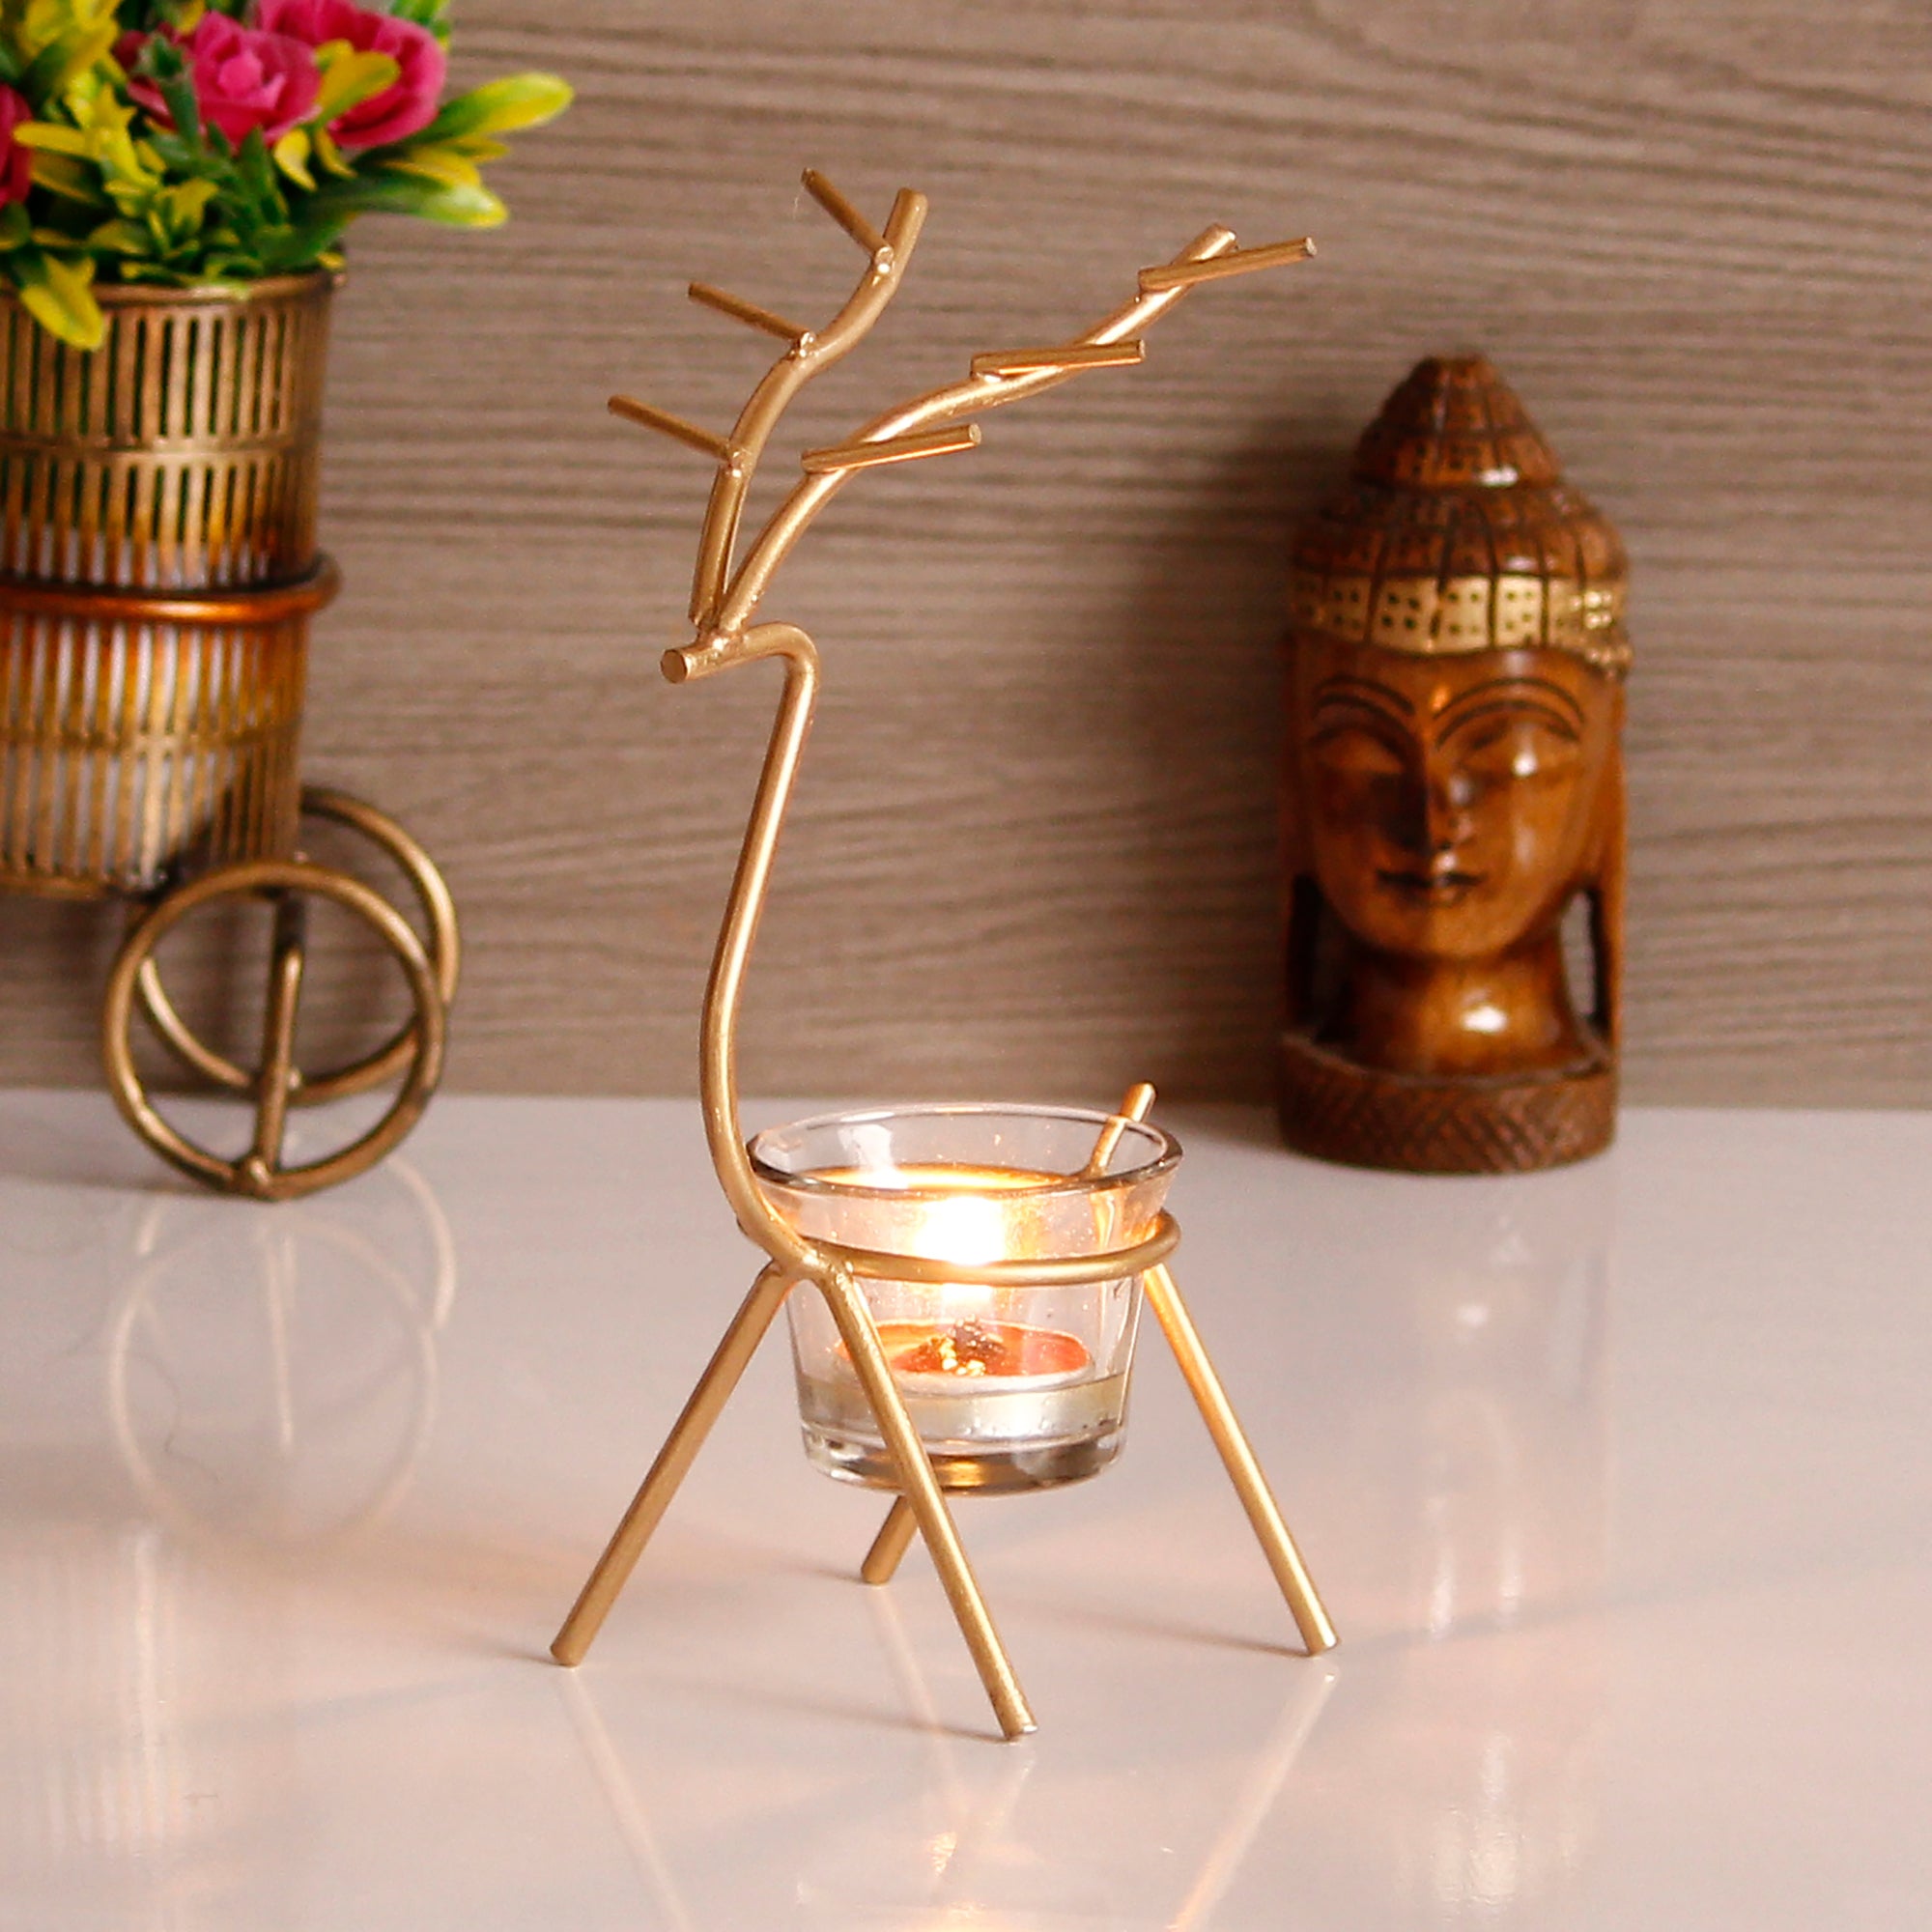 Deer Shape Decorative Handcrafted Metal Golden tea light candle holder